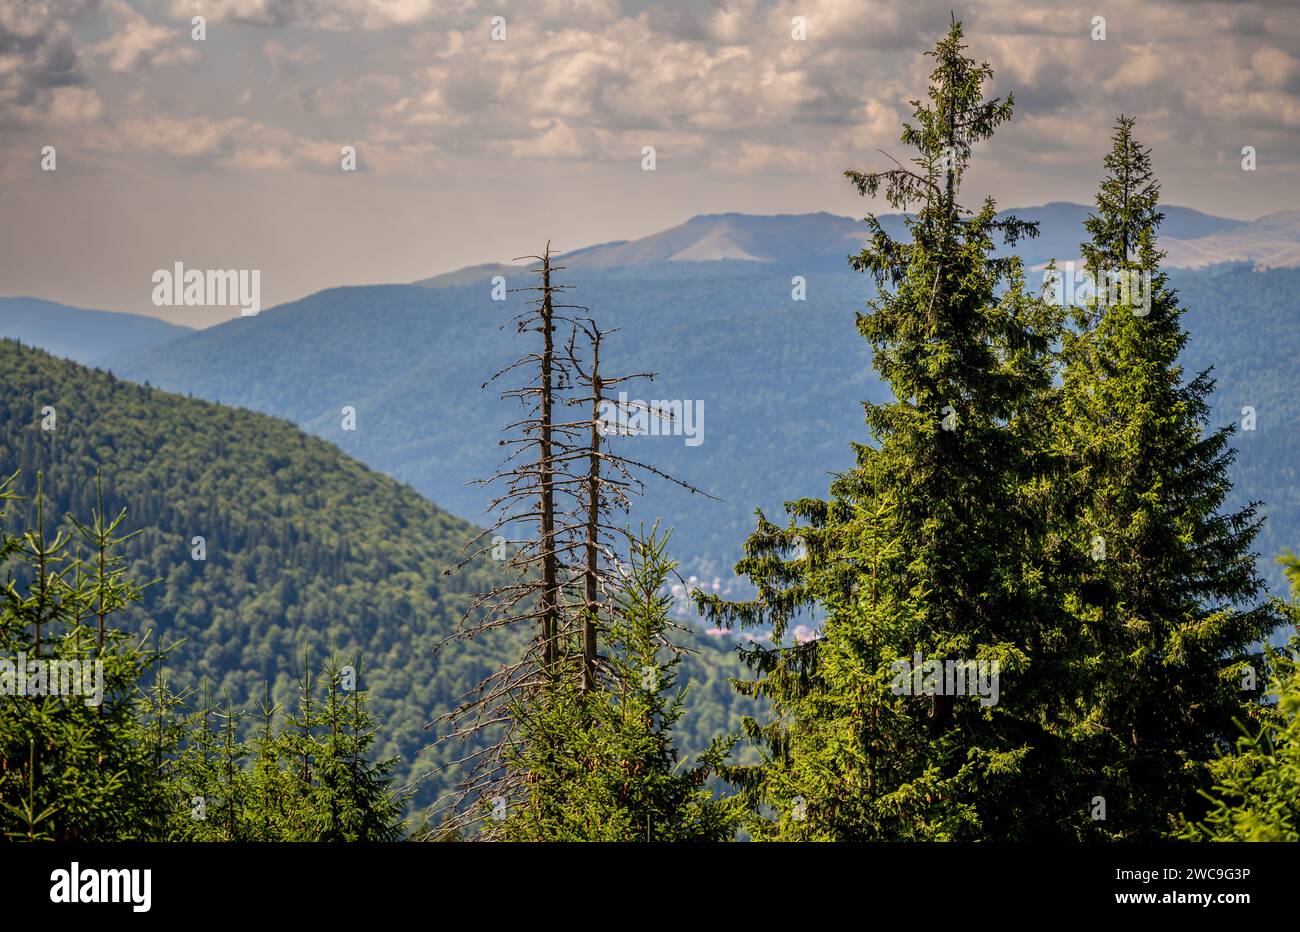 Ein malerischer Blick auf Pinien an den Hängen eines majestätischen Berges. Stockfoto